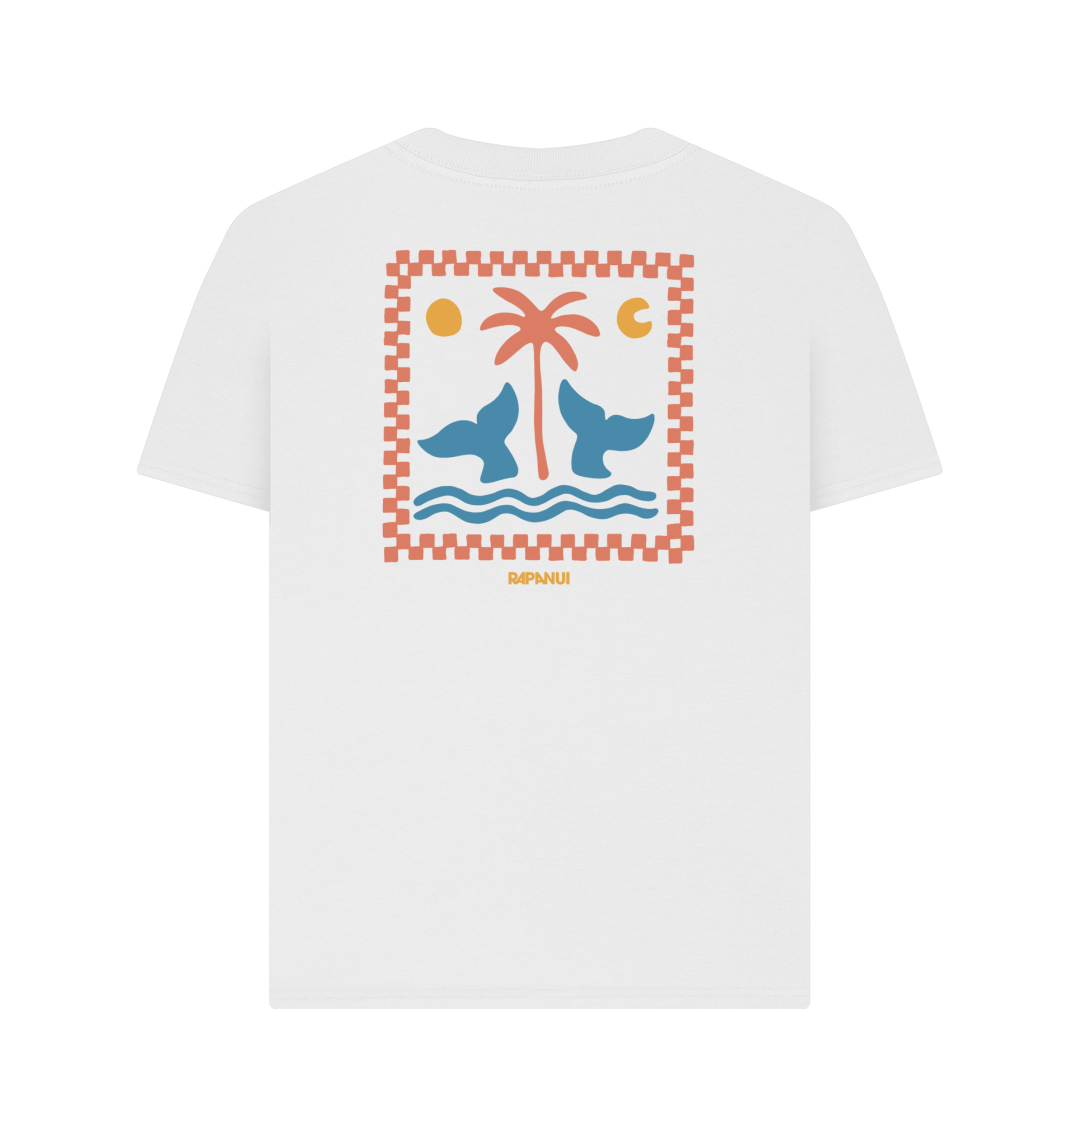 Ocean Life T - Shirt - Printed T - shirt